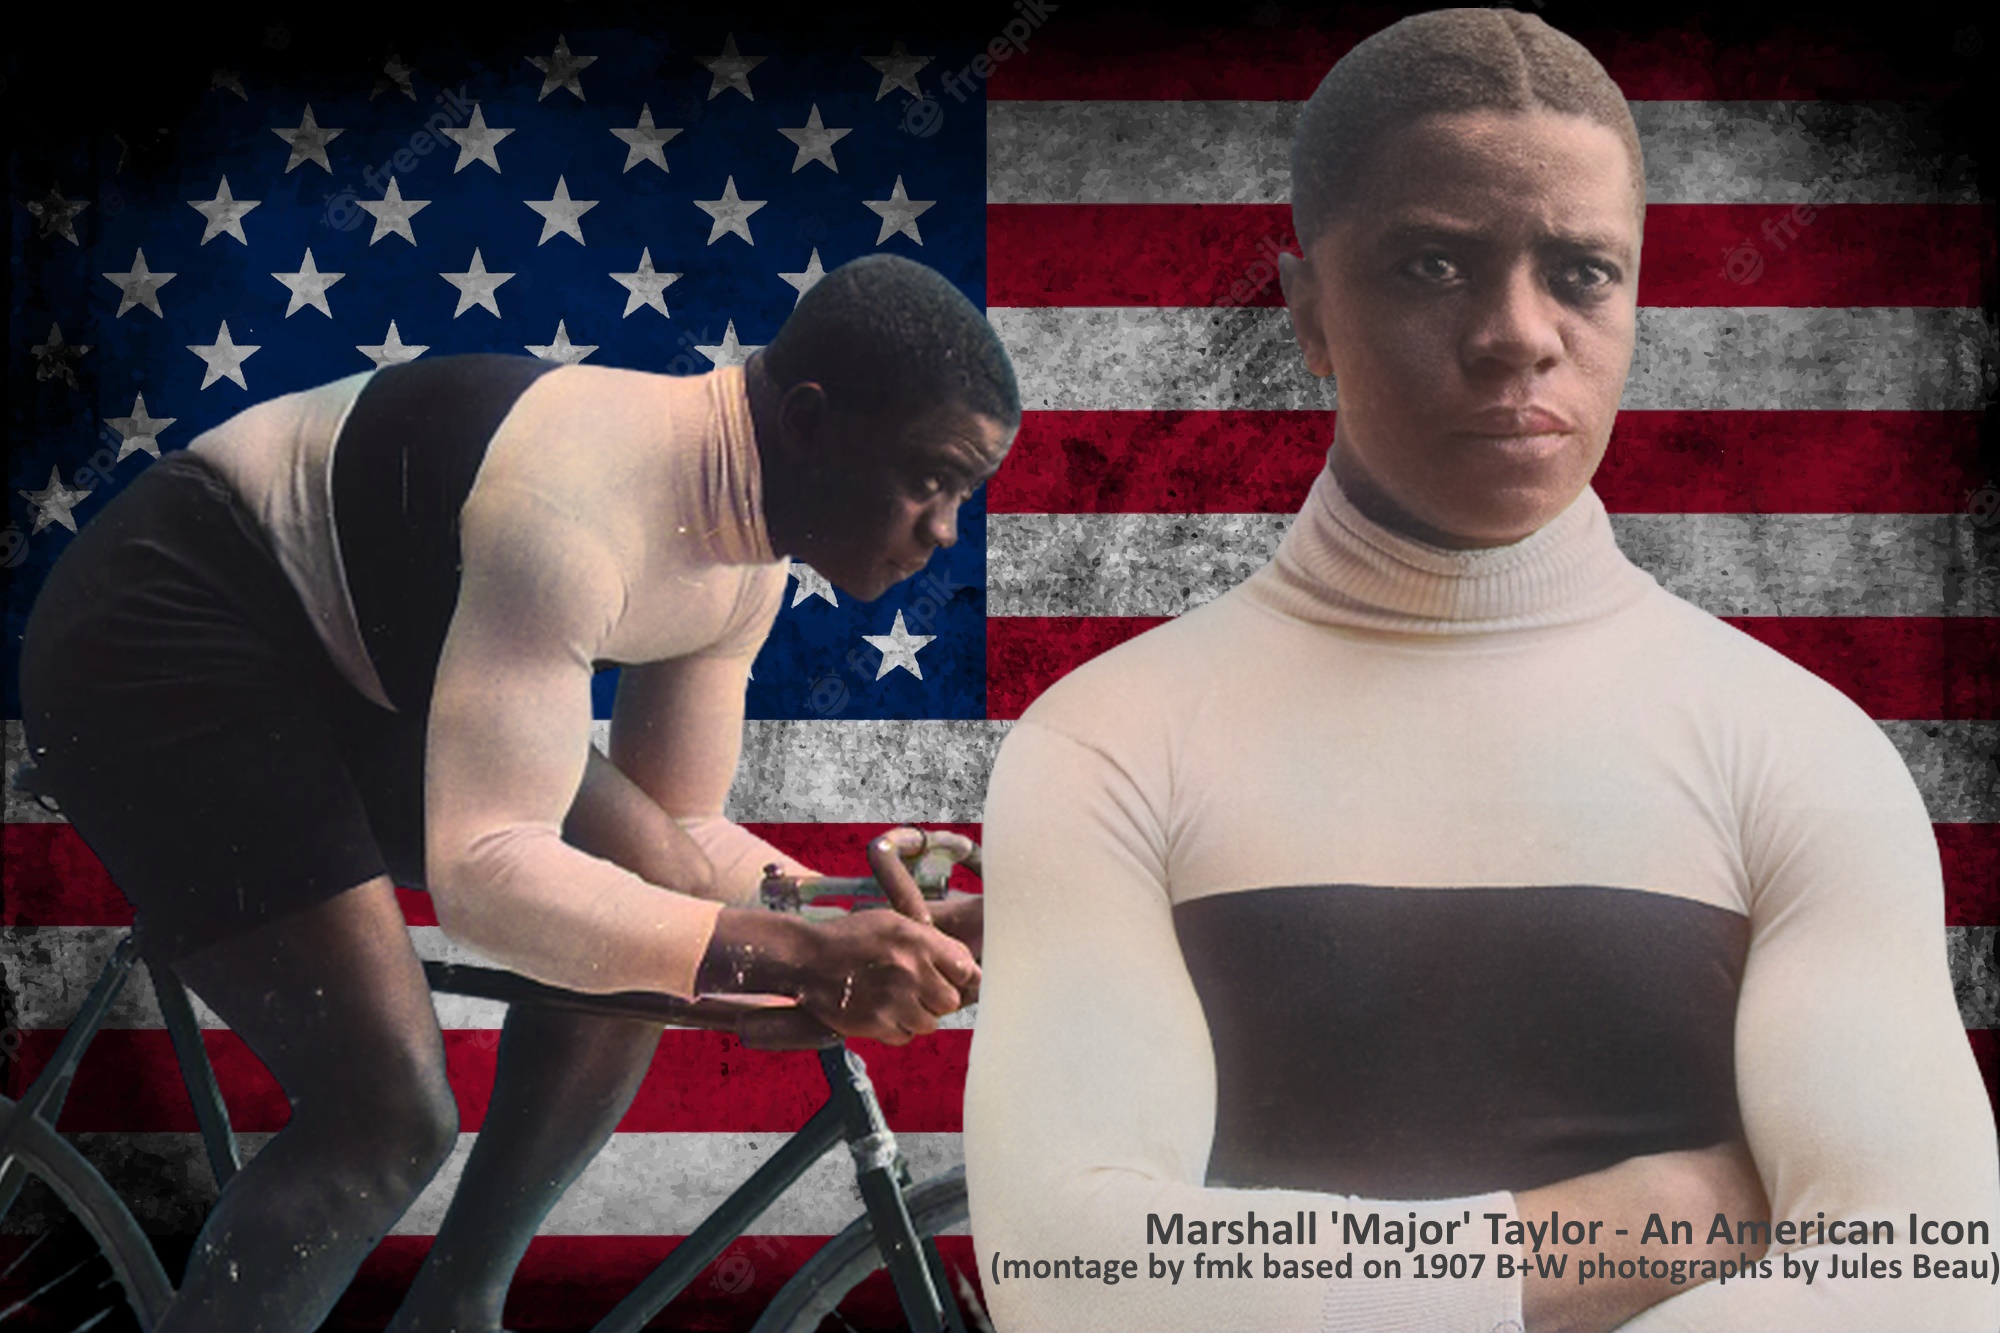 Marshall ‘Major’ Taylor - an American Icon